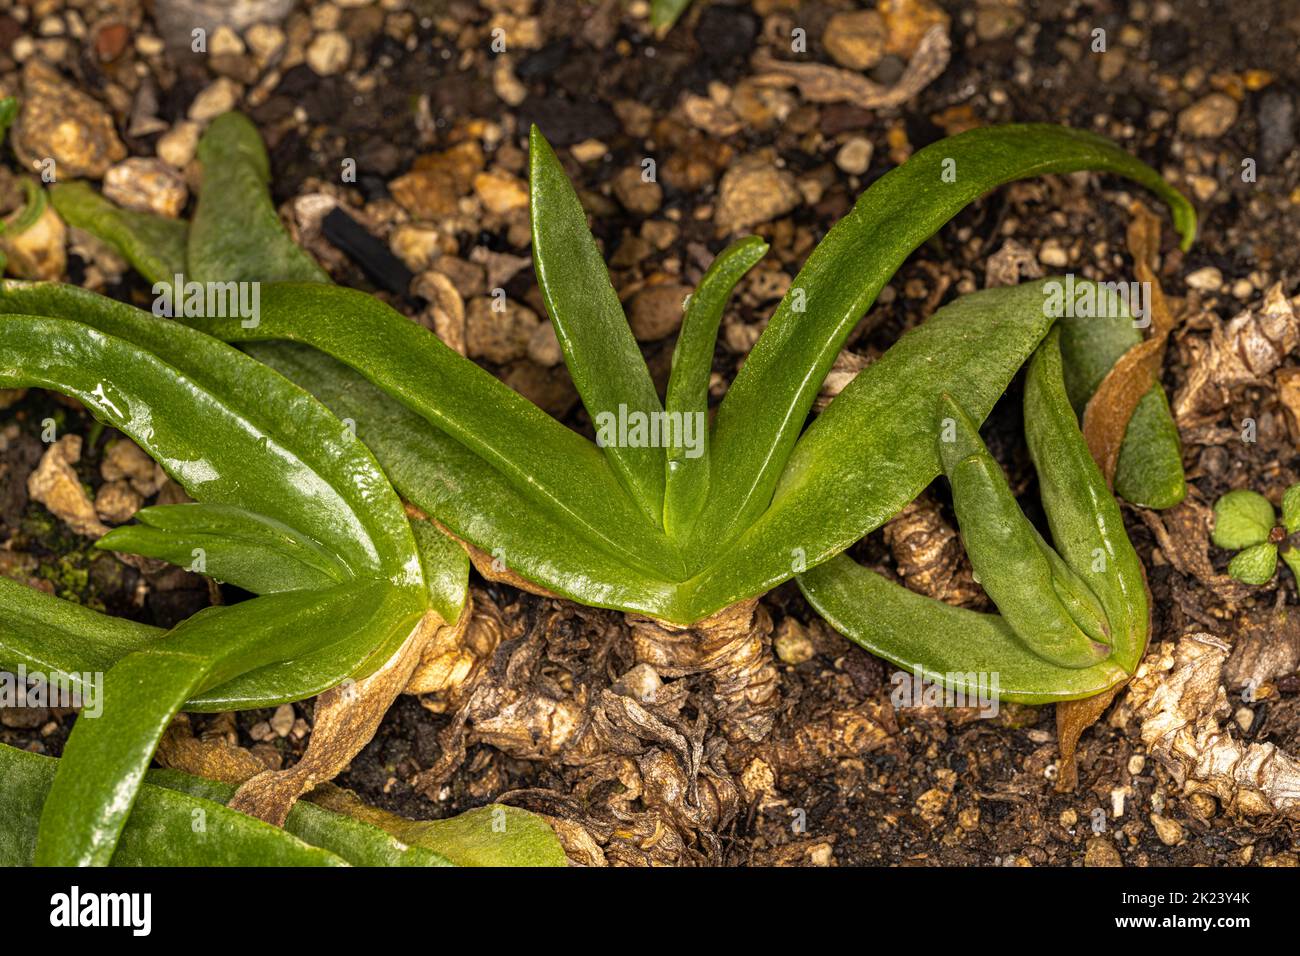 Leaves of Tongue-leaf Plant (Glottiphyllum longum) Stock Photo